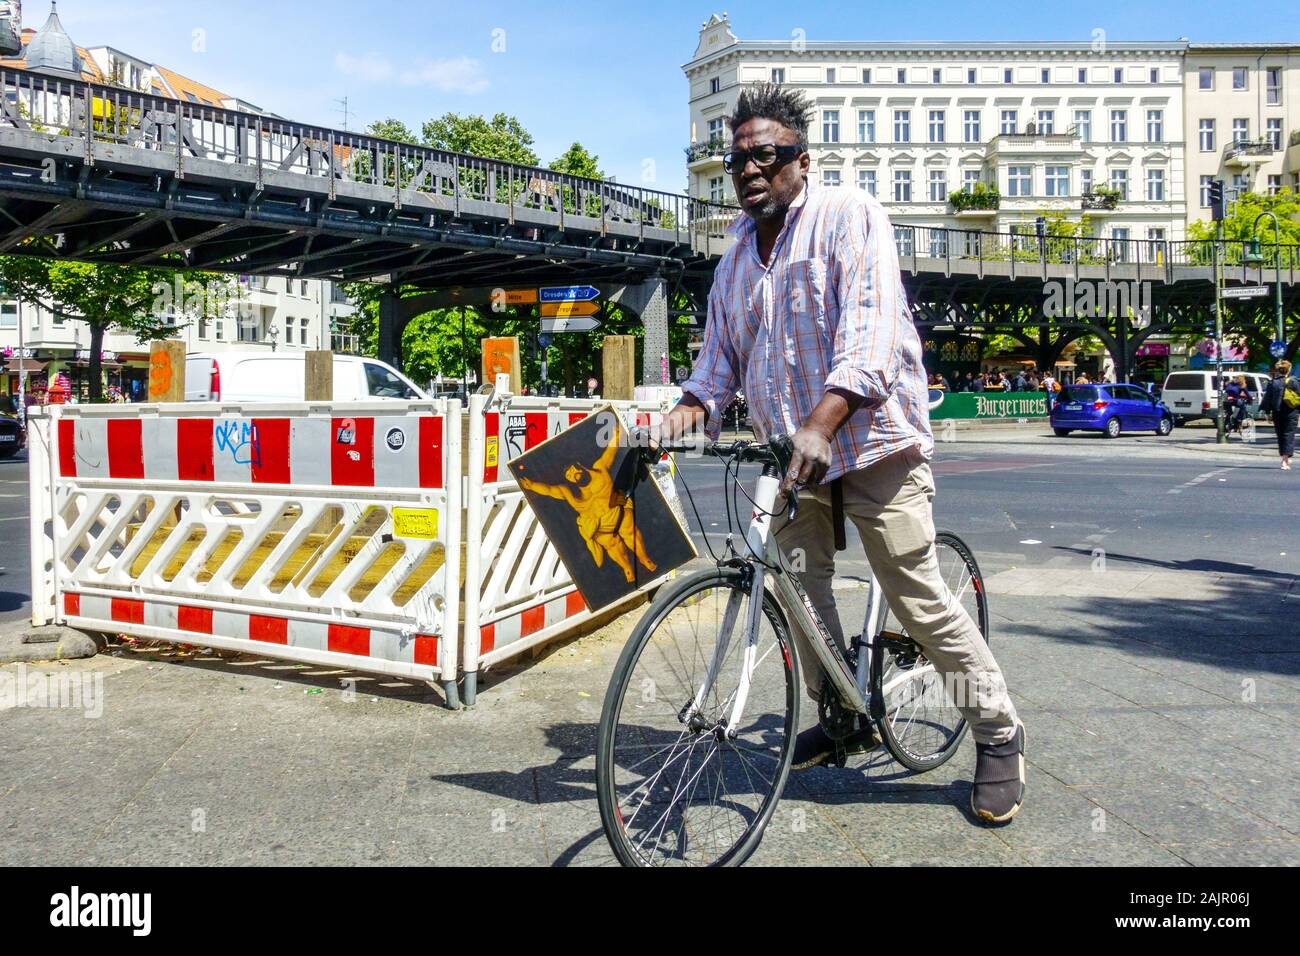 Deutschland Berlin Kreuzberg Alltag, Mann auf einem Fahrrad mit einem Bild von fetten Jesus Schlesisches Tor, Berlin City People Afro American man Berlin Bike Stockfoto